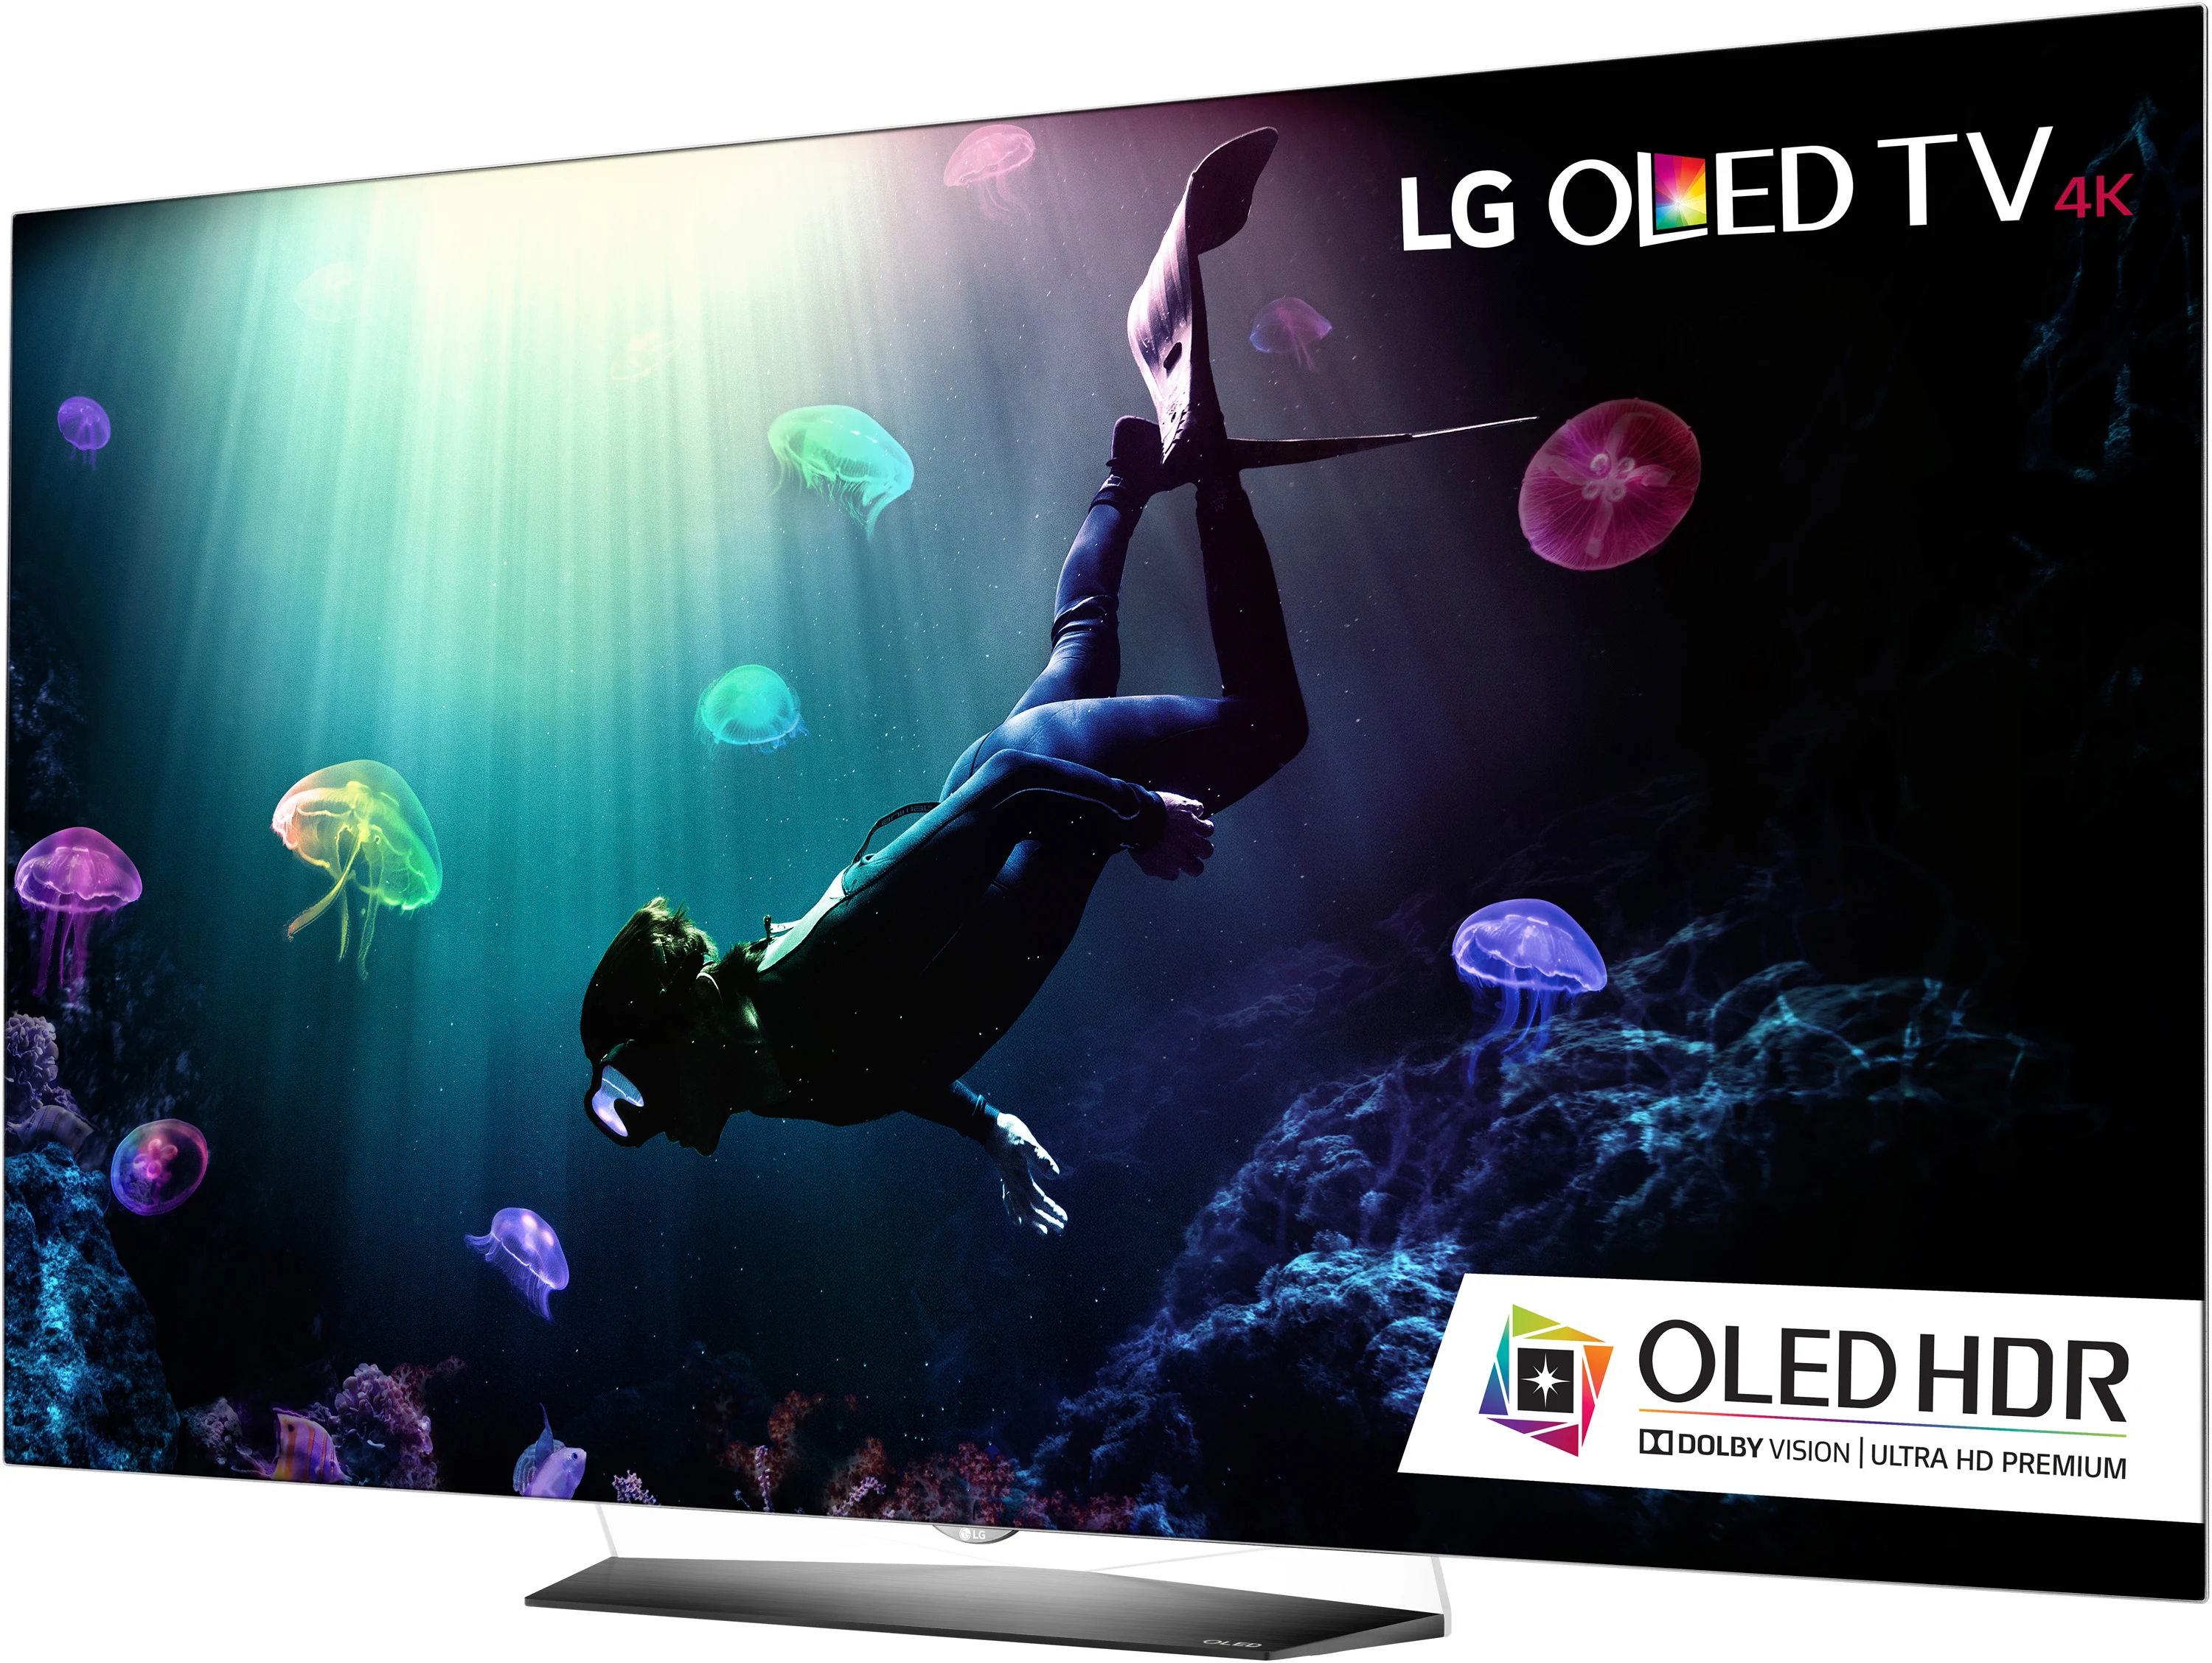 Телевизор oled hdr. Как проверить OLED телевизор перед покупкой. OLED Tester image.